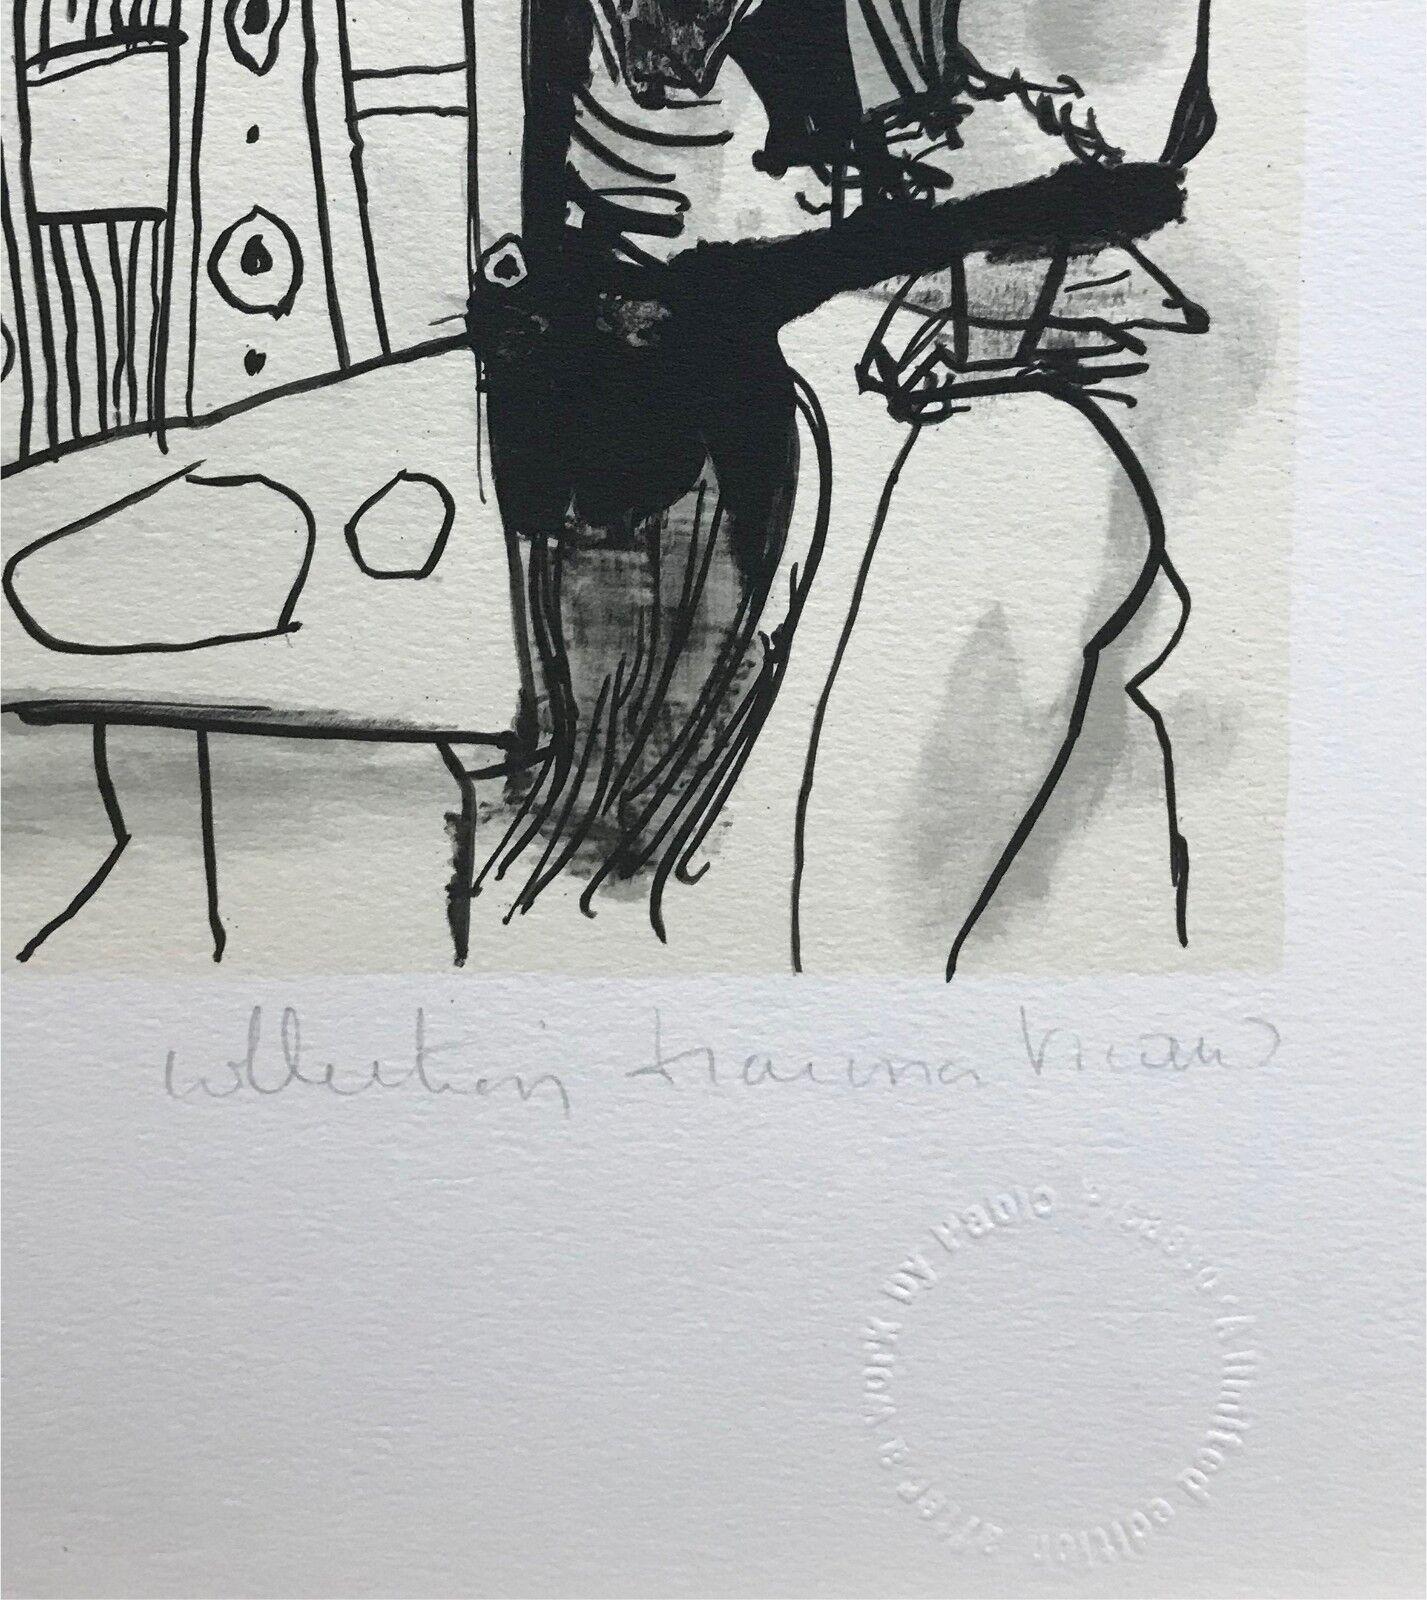 JEUX DE PAGES - Print by (after) Pablo Picasso